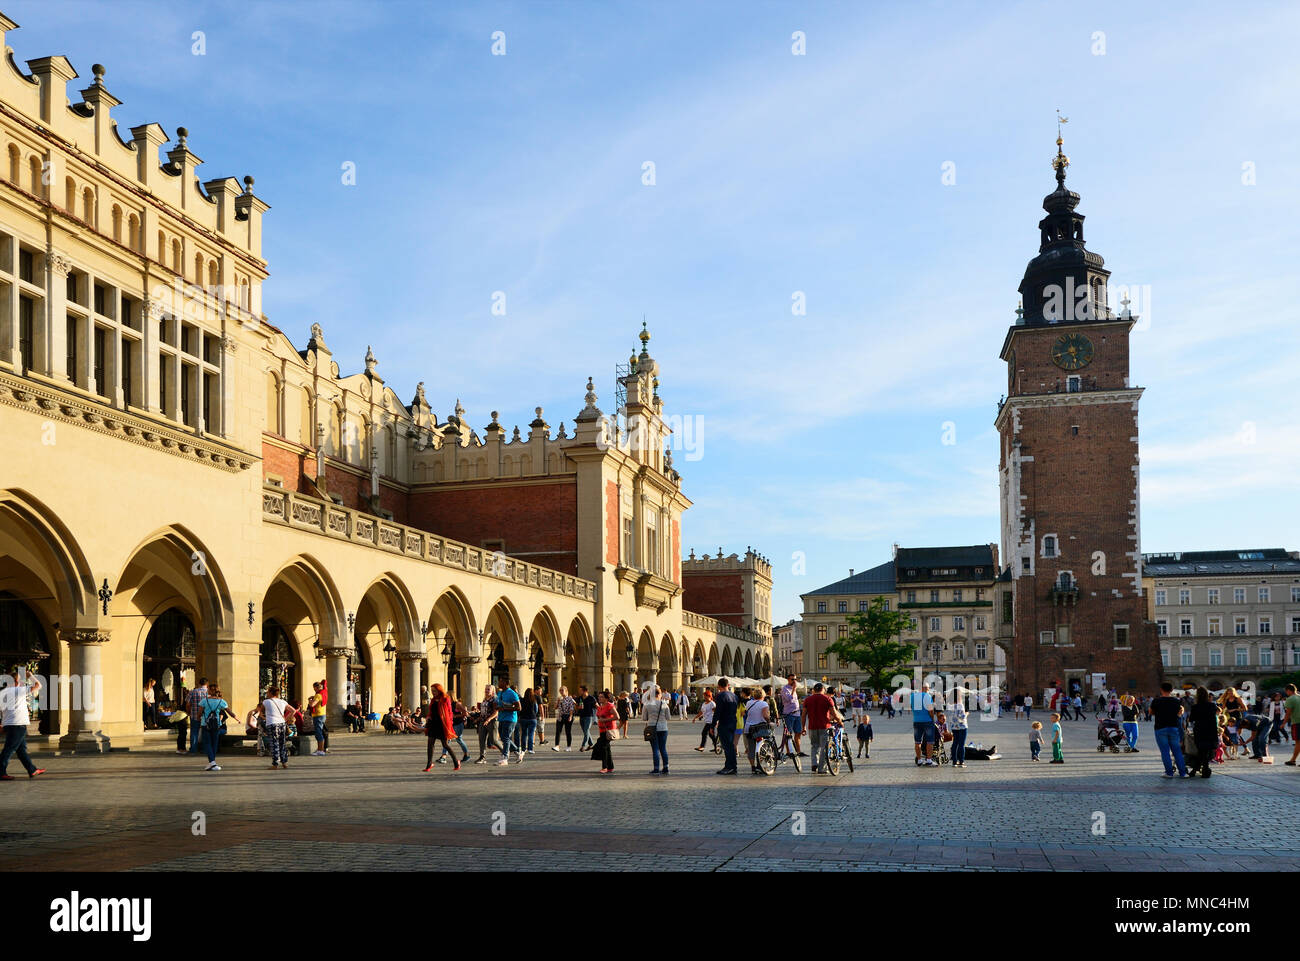 La Halle aux draps et de la Tour de ville dans la vieille ville de Cracovie, Site du patrimoine mondial de l'Unesco. Cracovie, Pologne Banque D'Images